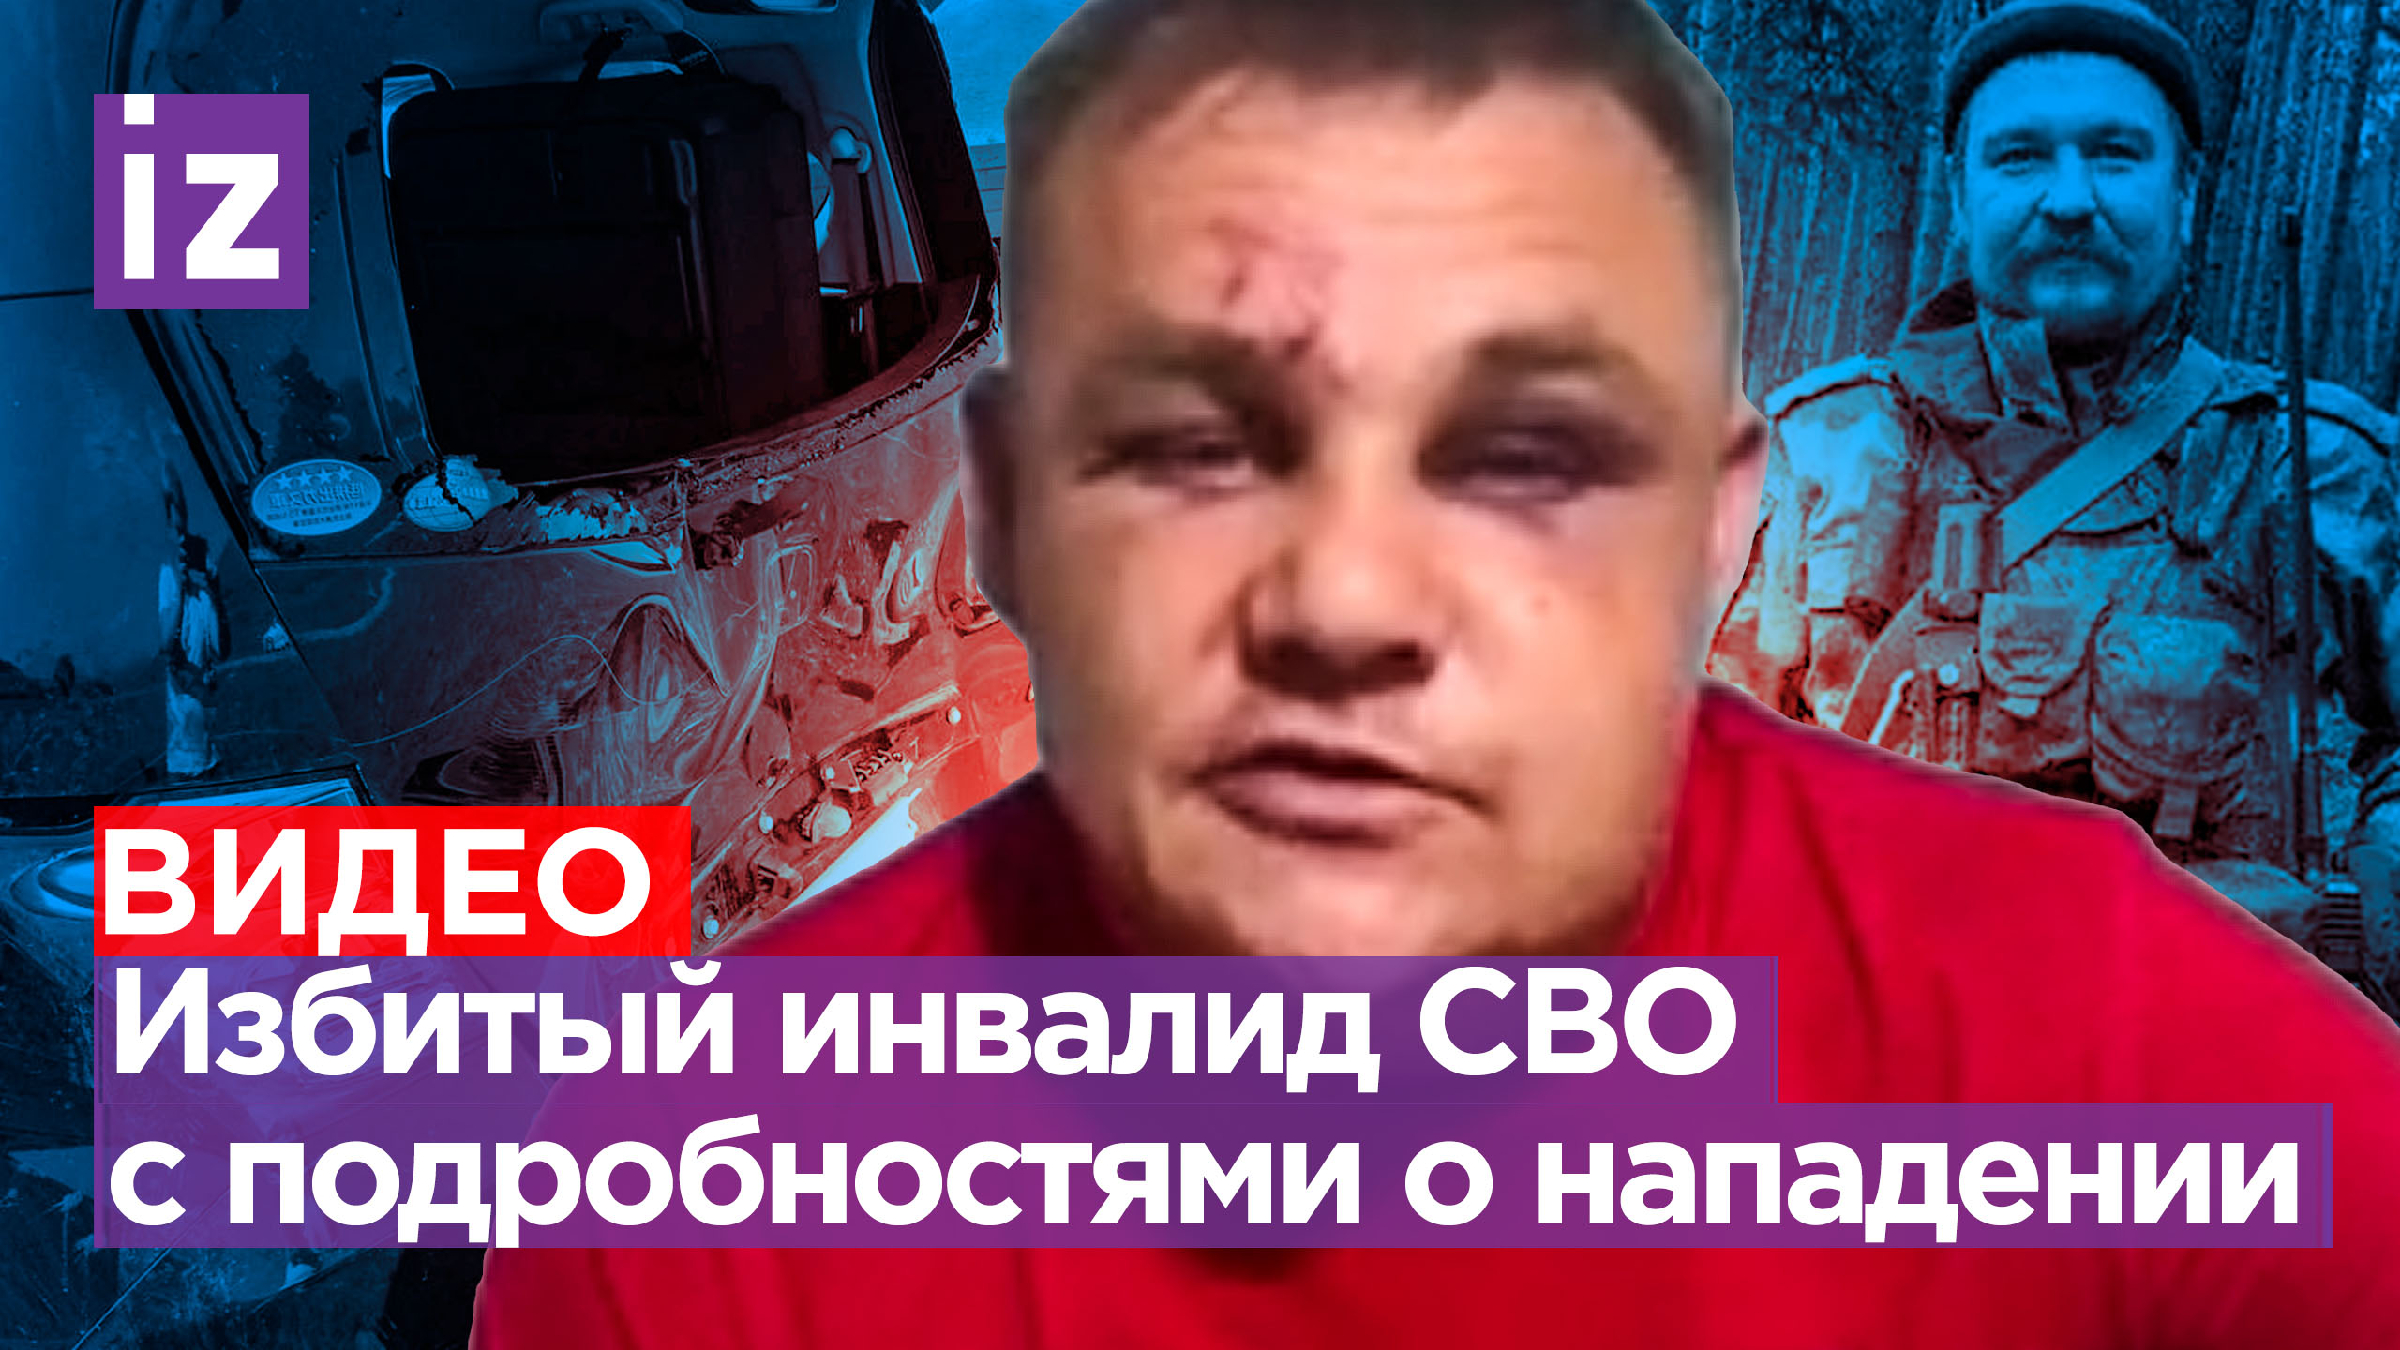 Участника сво избили в москве. В Забайкальском крае избили участников сво. Ветеран сво Забайкалье.